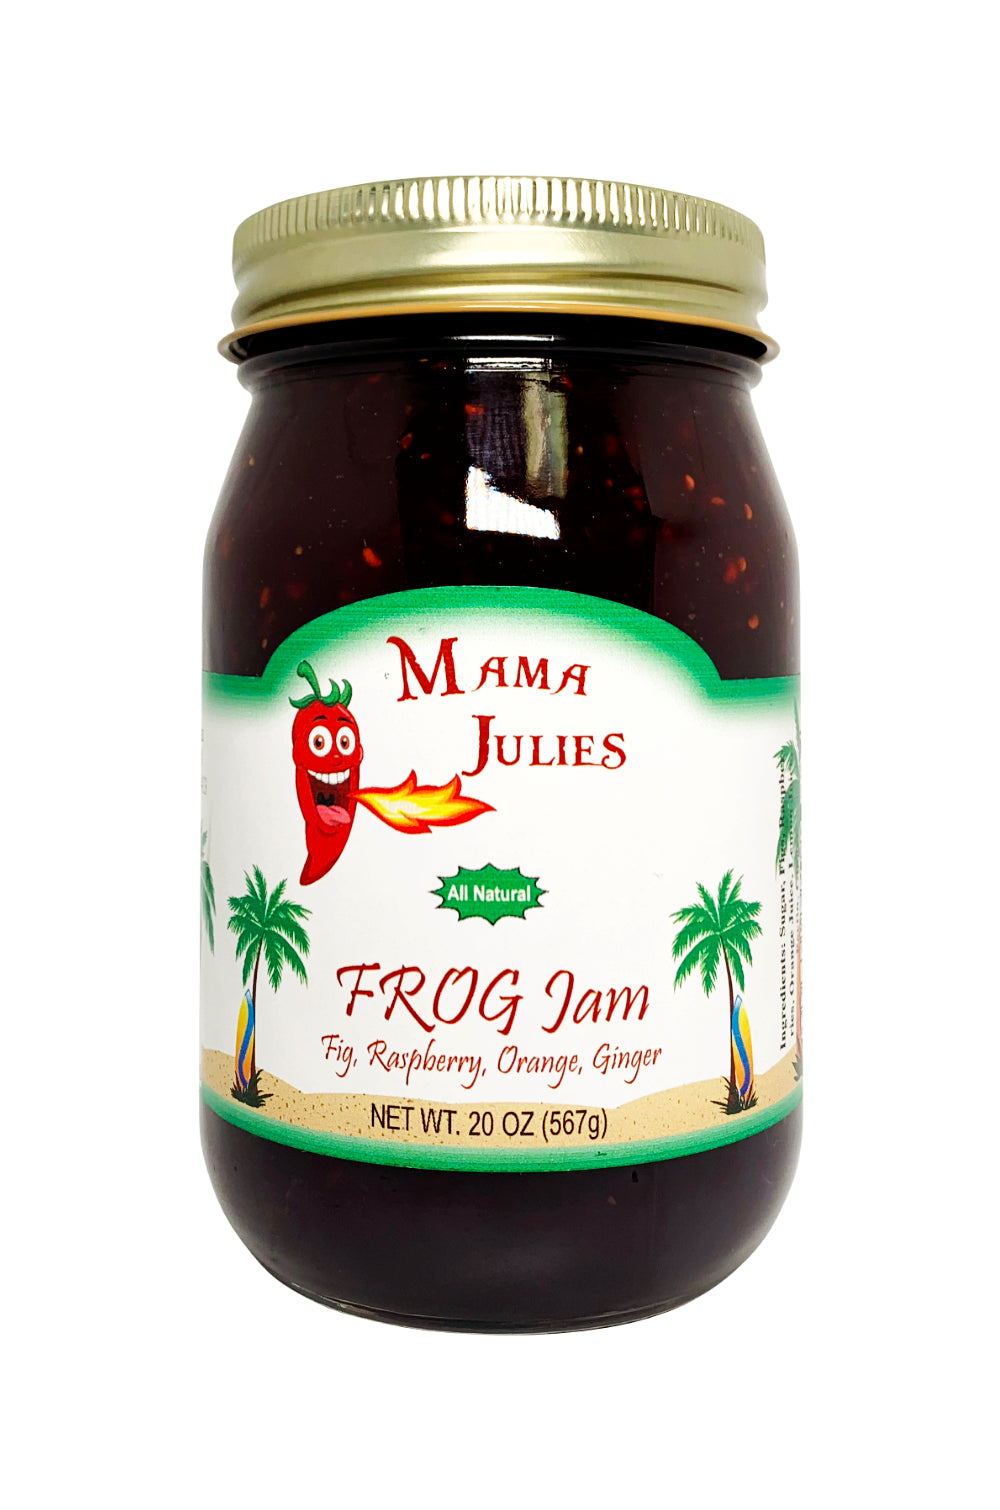 Mama Julie's FROG Jam